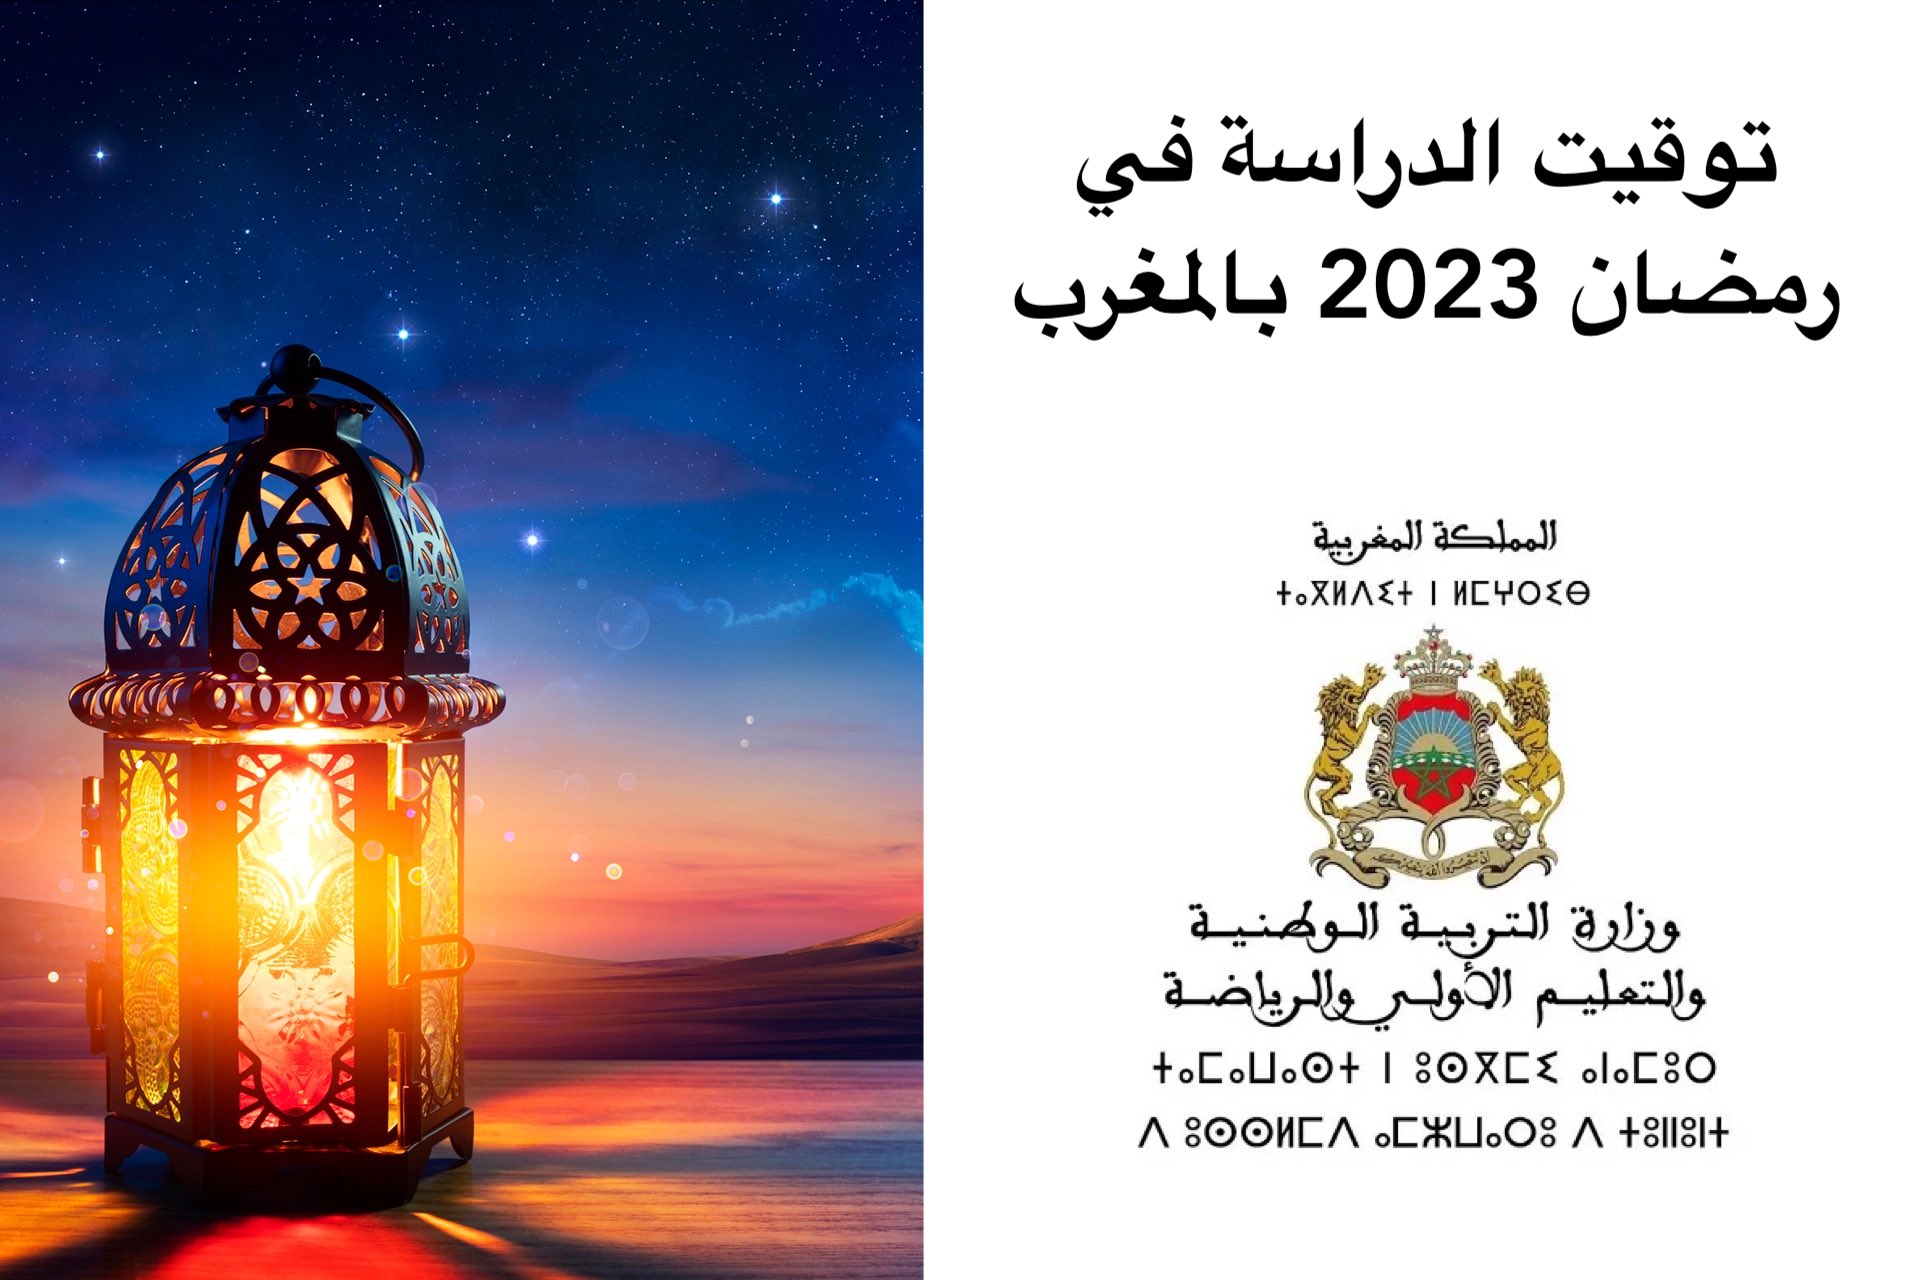 توقيت الدراسة في رمضان 2023 بالمغرب